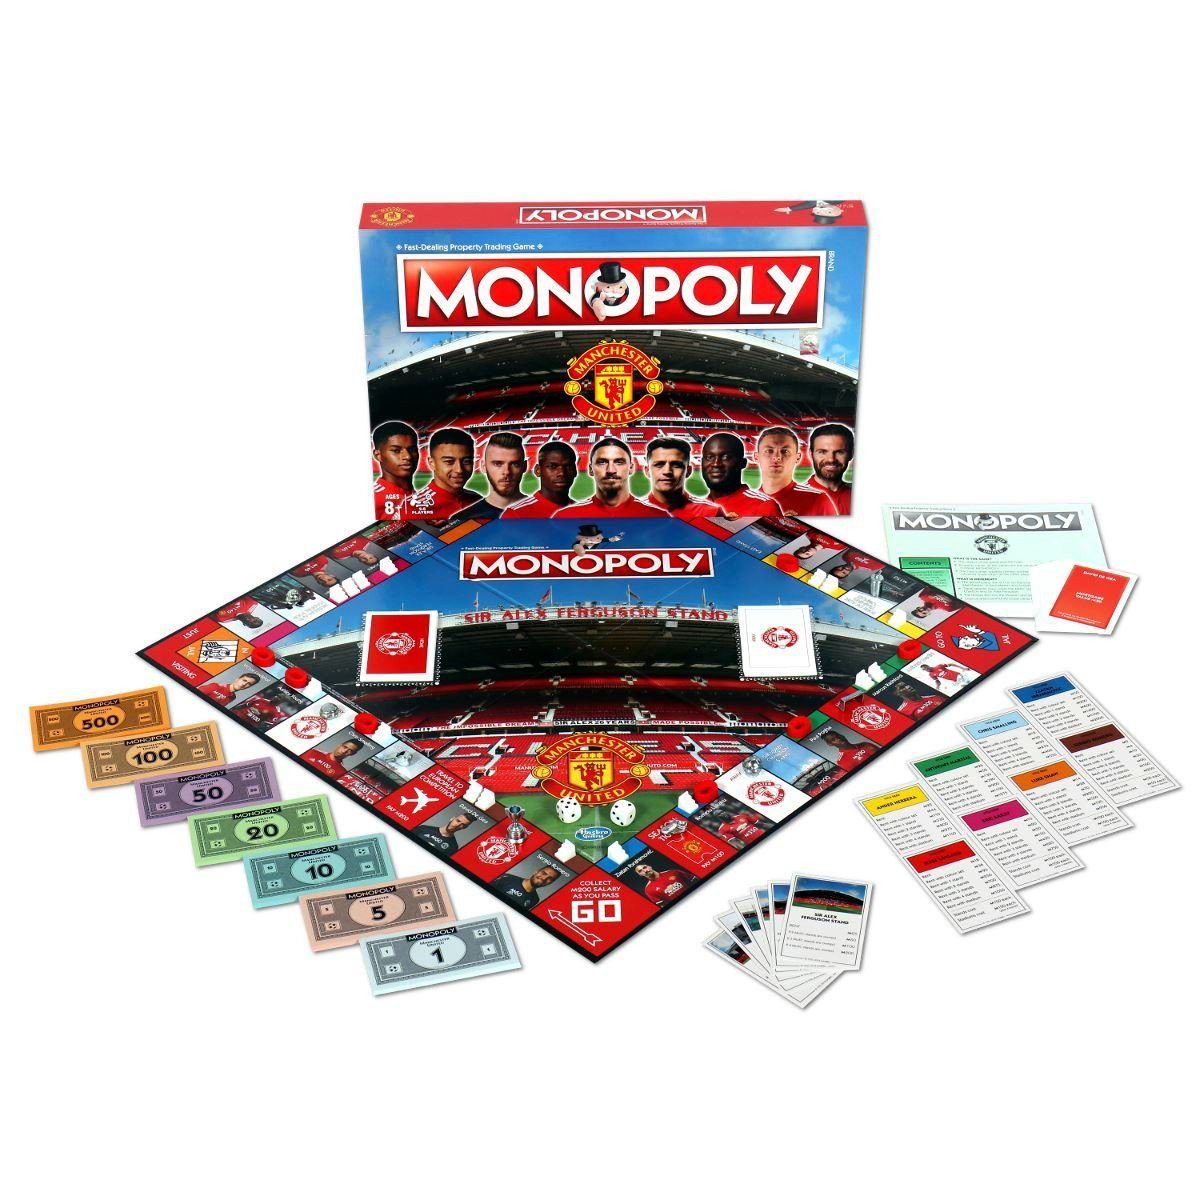 Brettspiel United Monopoly (englisch) - Winning Spiel, Moves Manchester